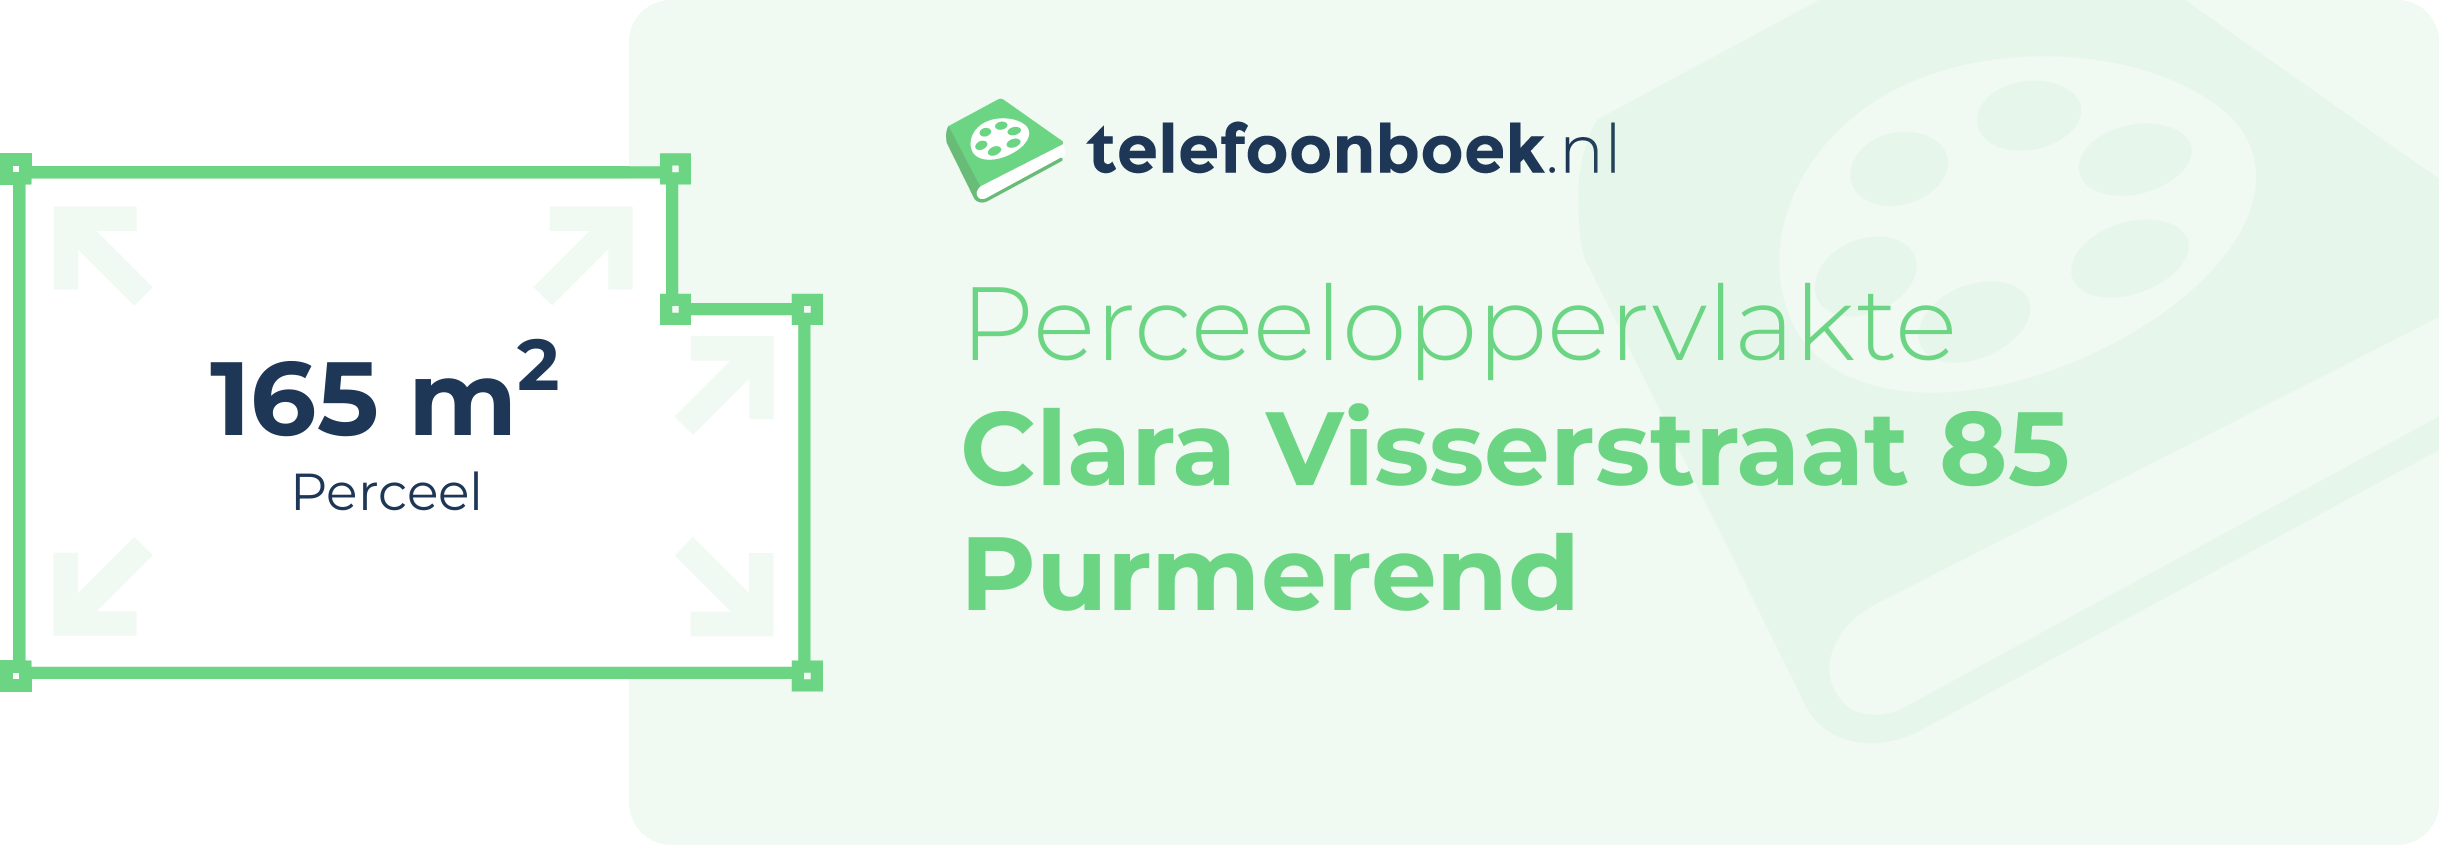 Perceeloppervlakte Clara Visserstraat 85 Purmerend